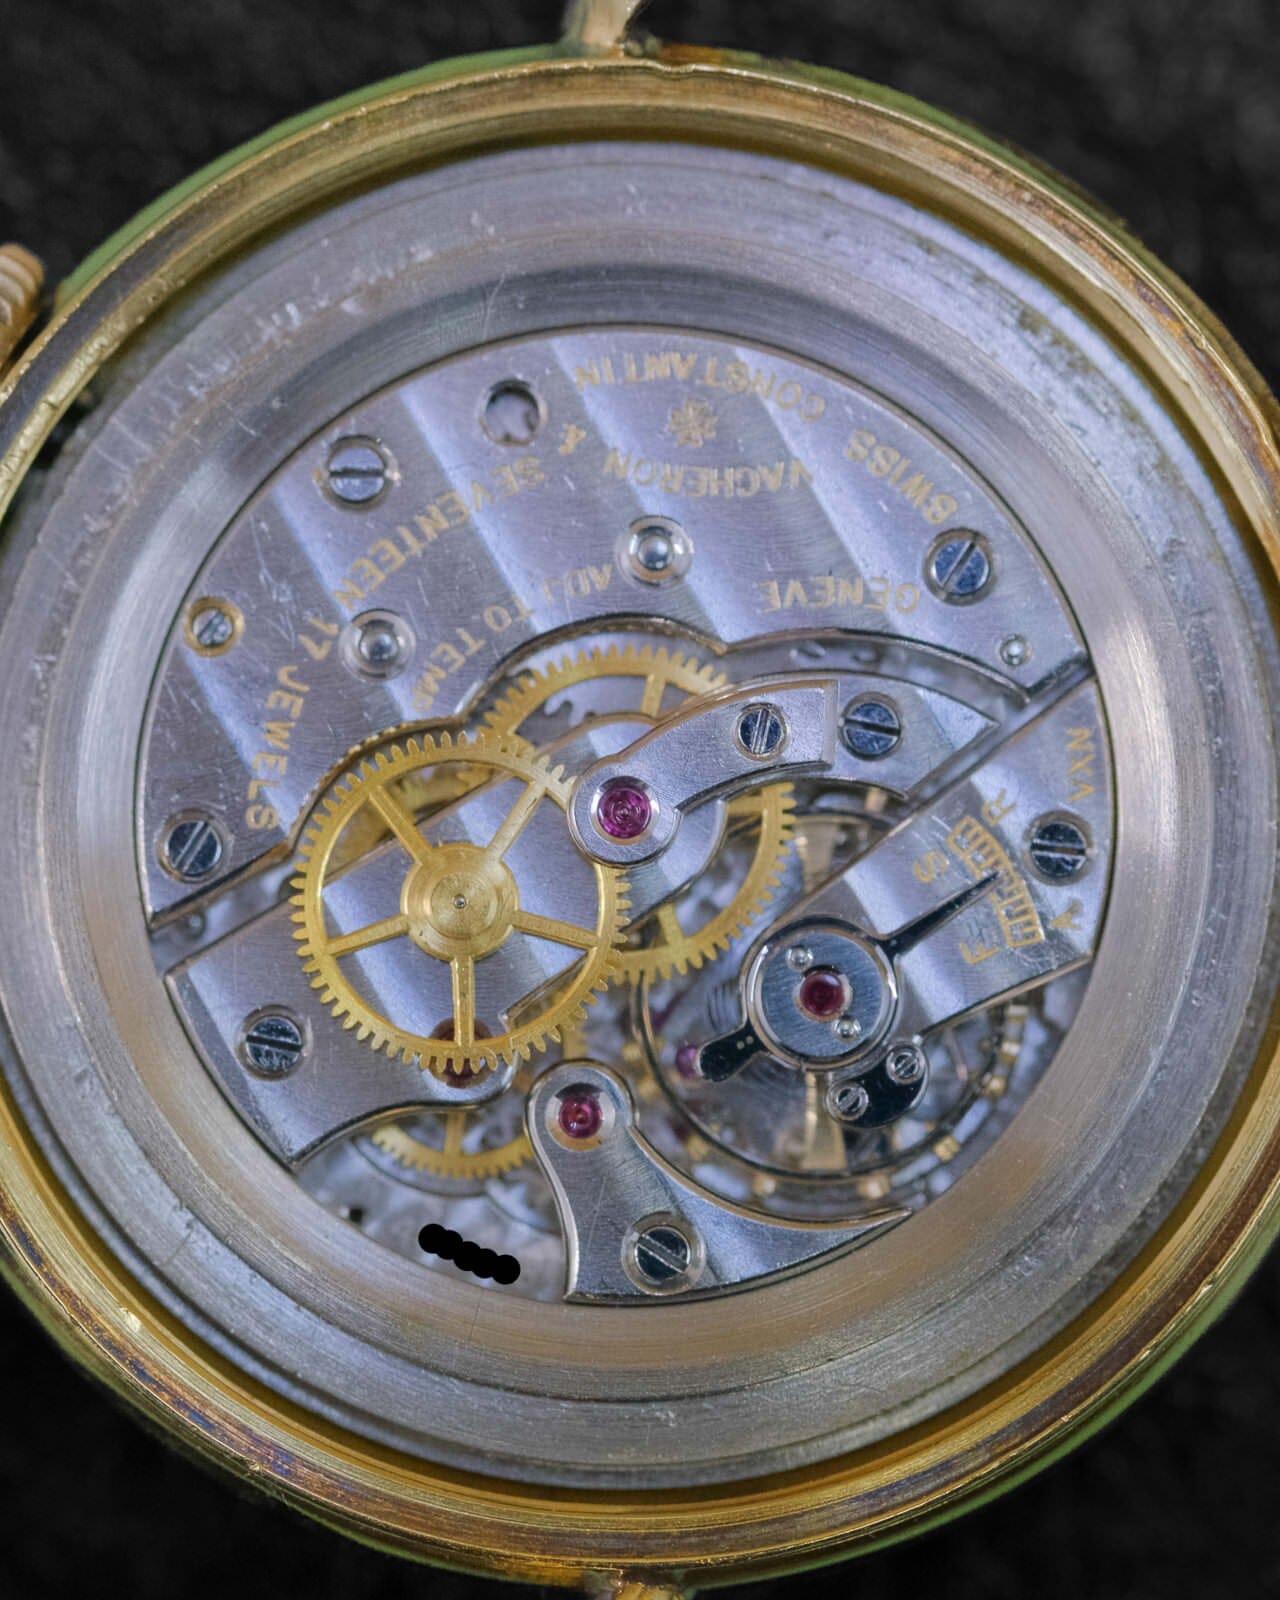 Vacheron Constantin Silver Arabic Dial 1940s Watch VACHERON CONSTANTIN 